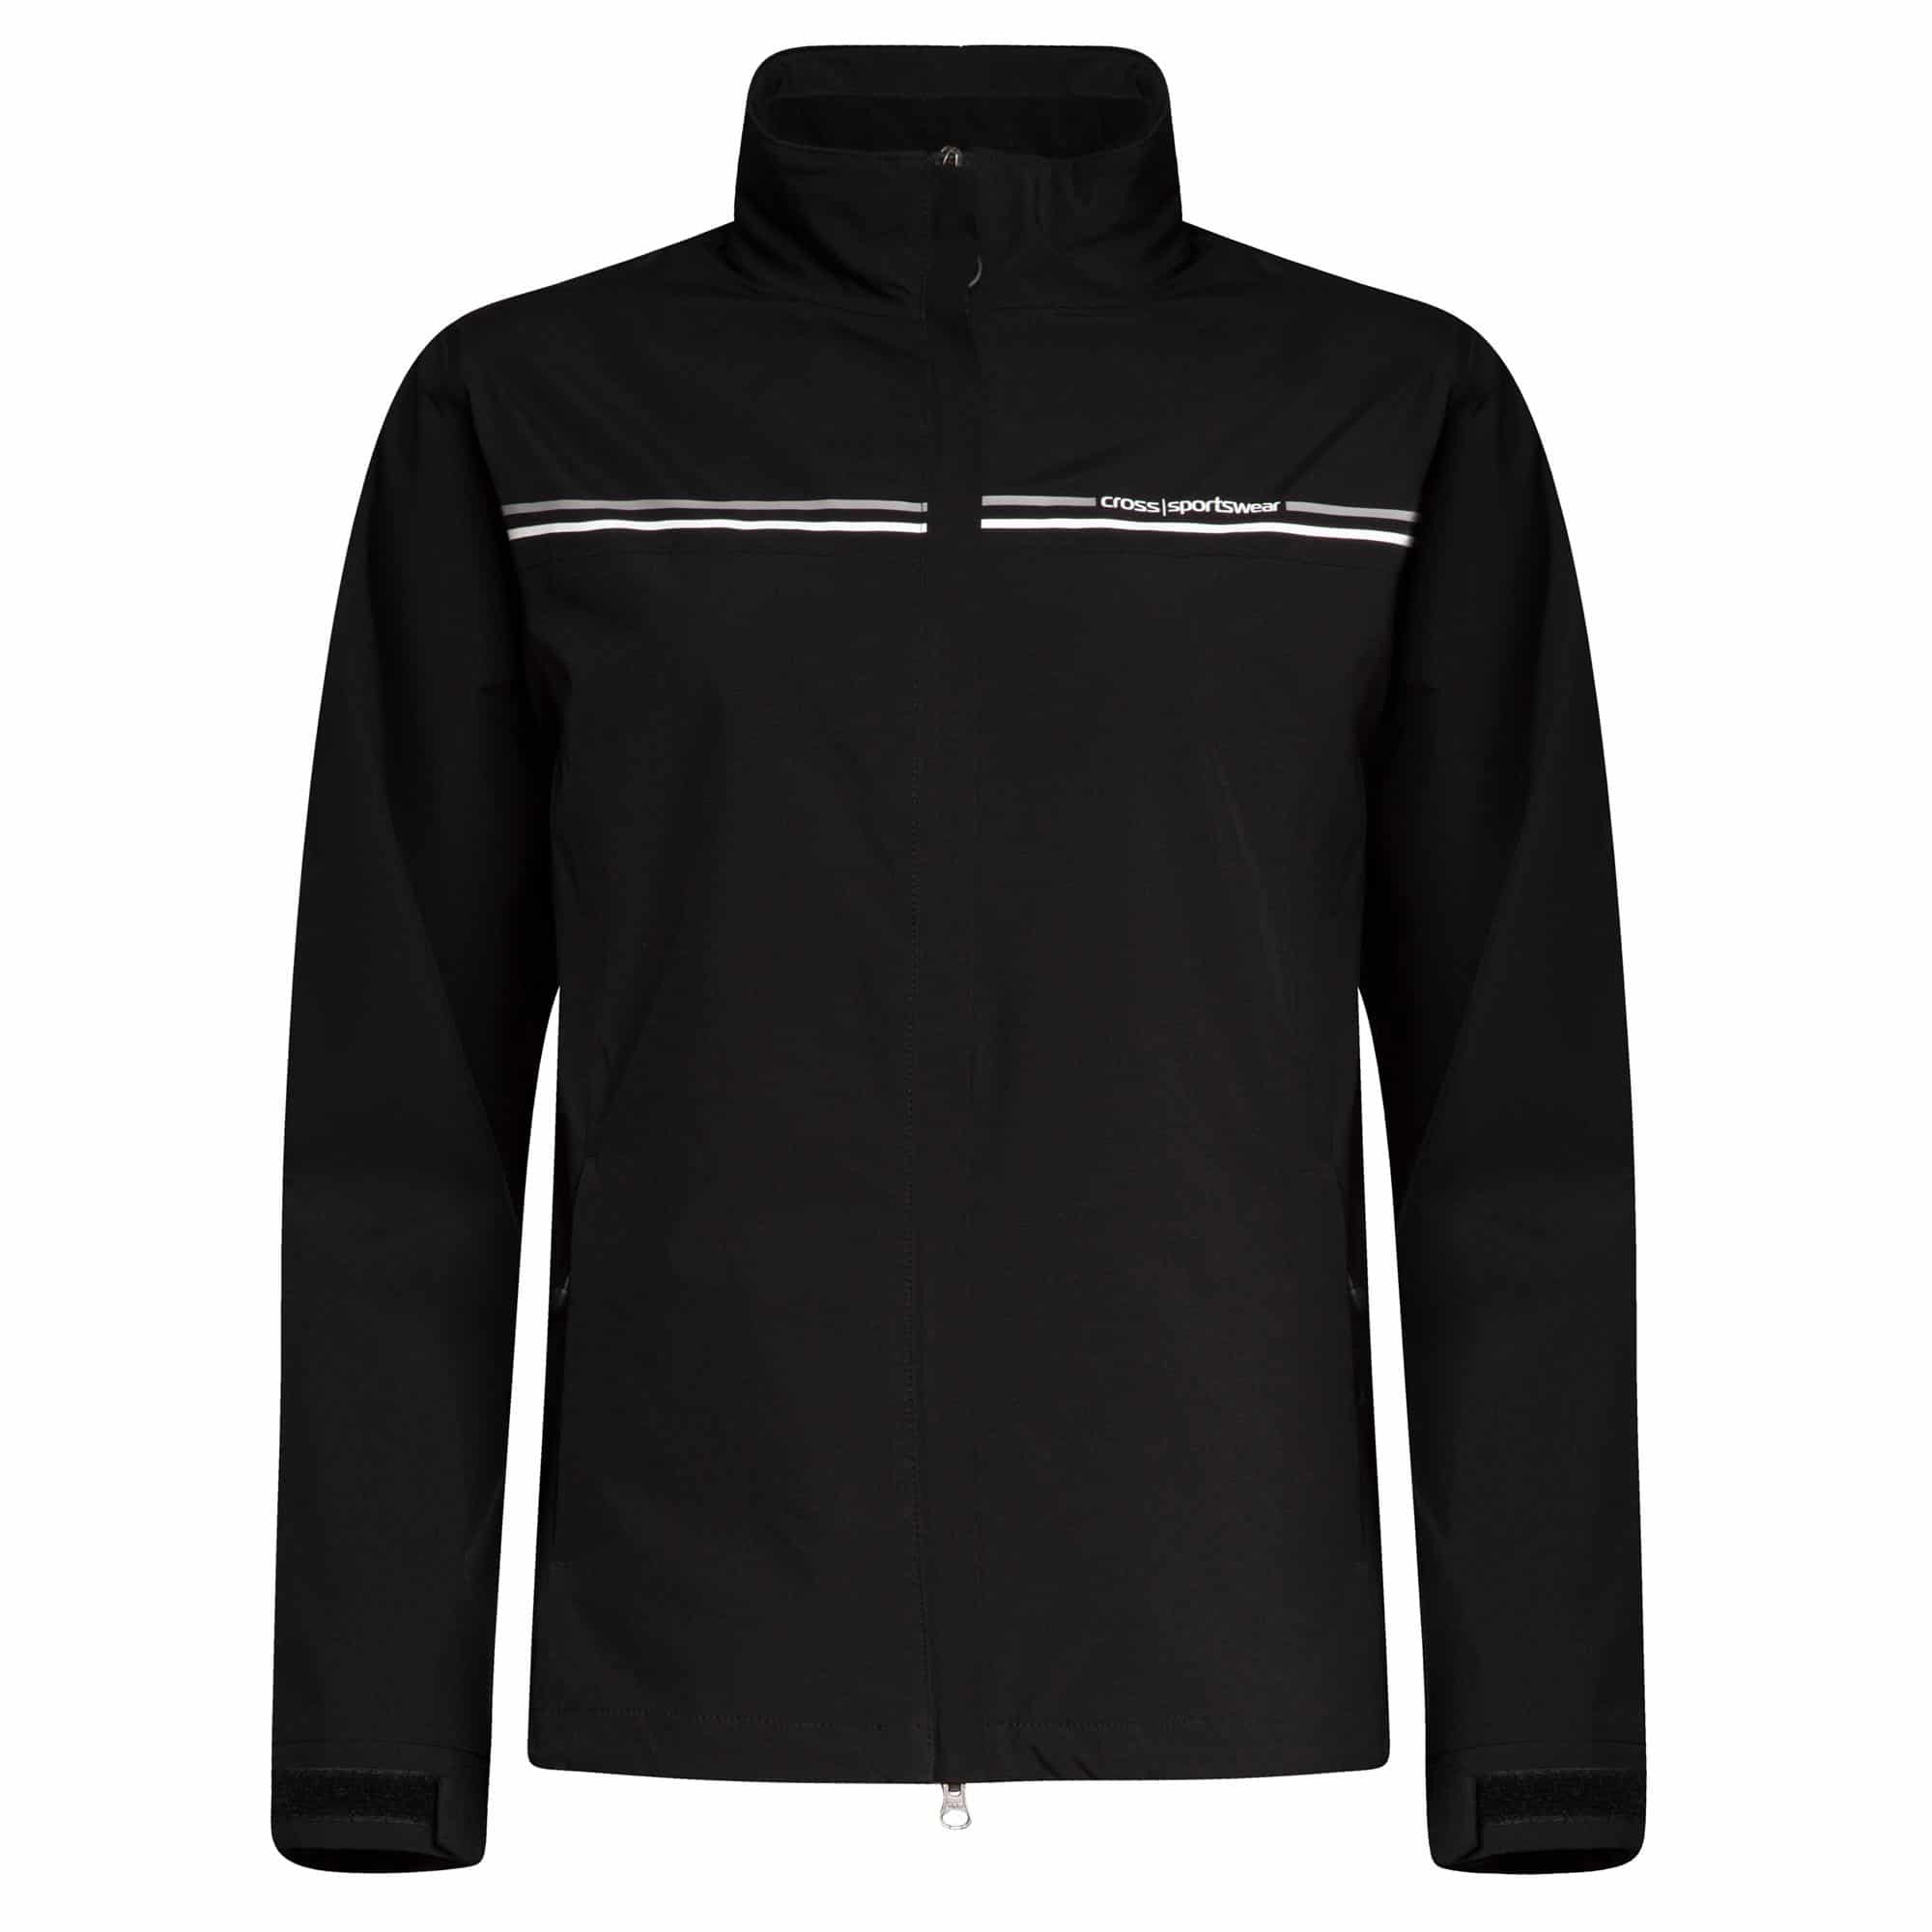 Cross Cloud Waterproof Ladies Golf Jacket Black